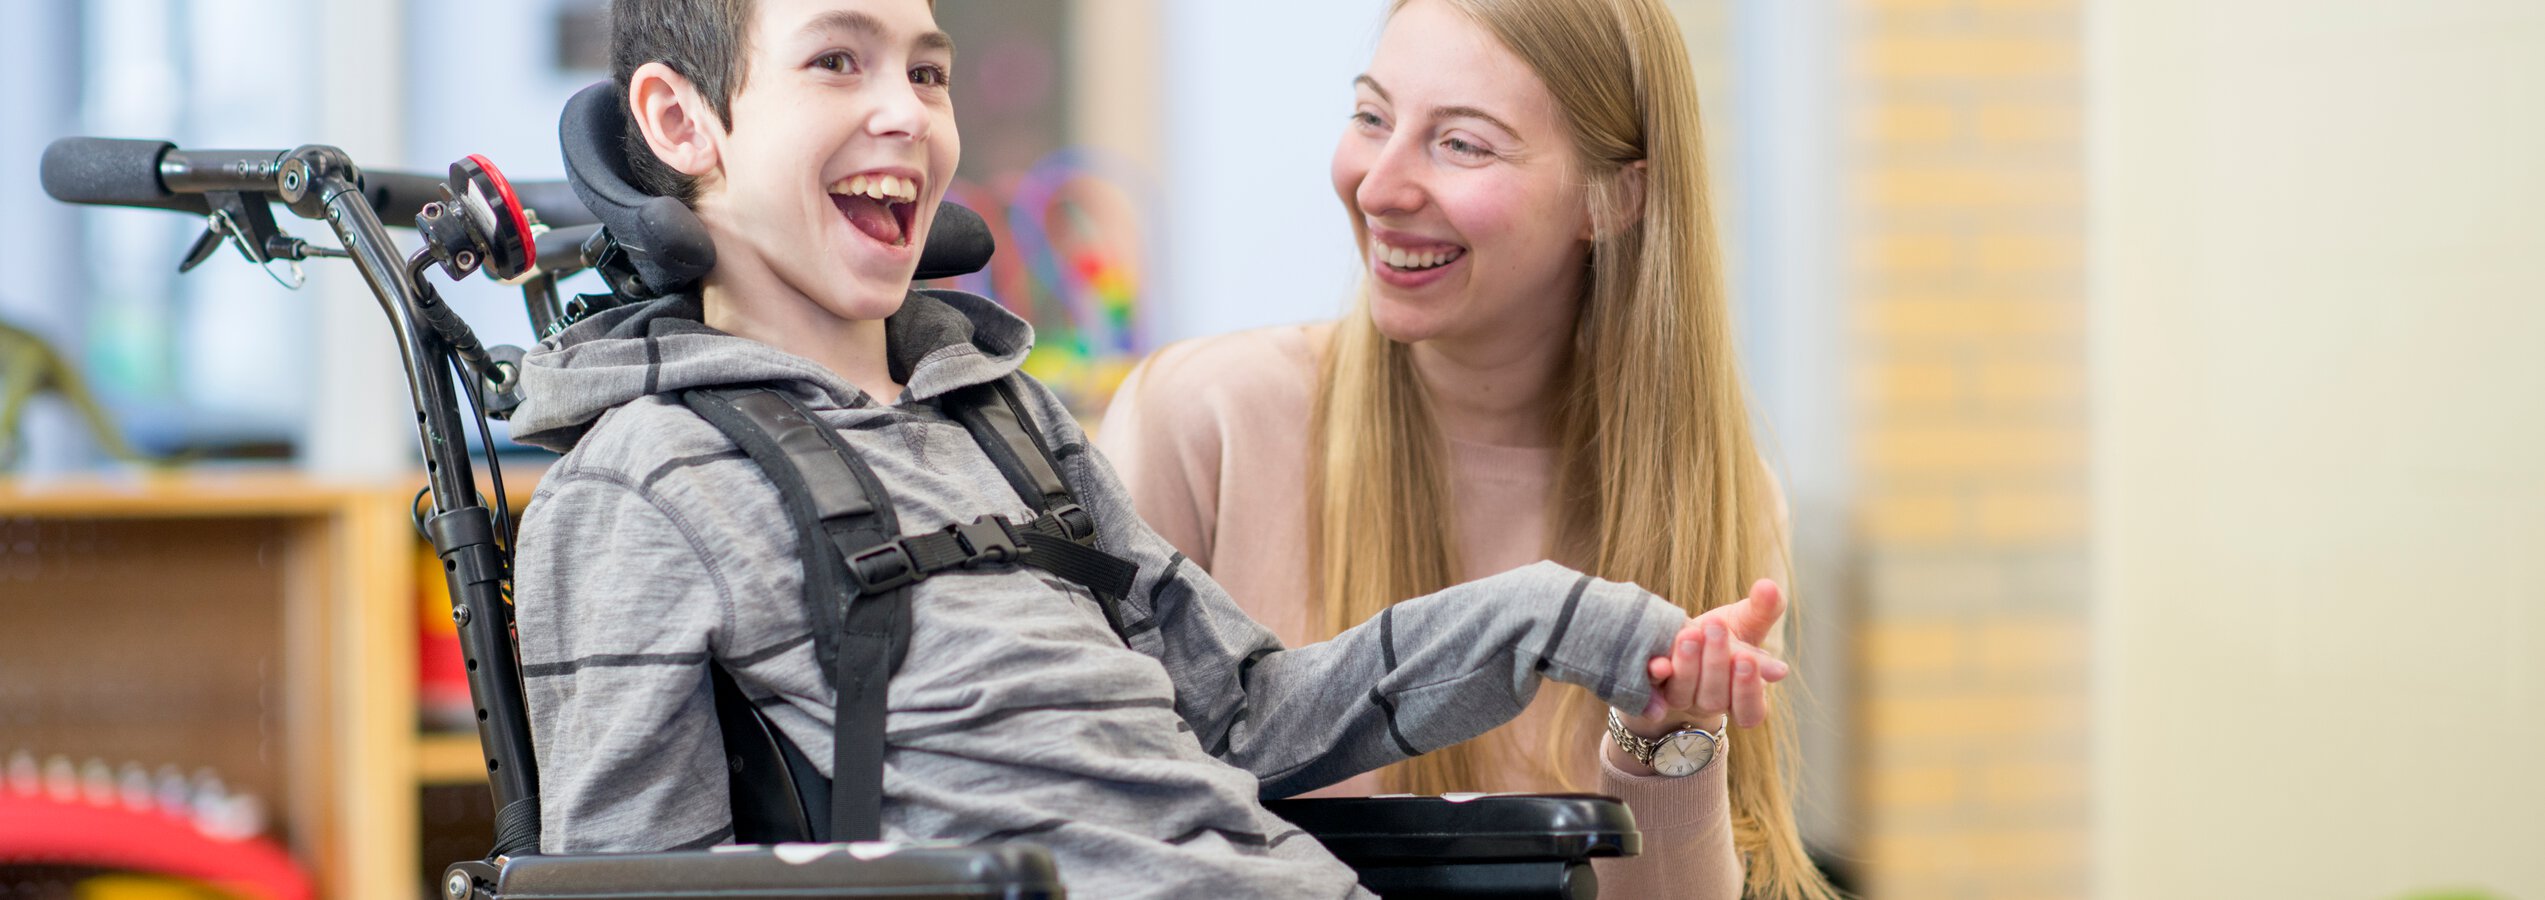 Ausbildung Heilerziehungspfleger - Junge Pflegerin und geistig behinderter Junge lachend und spielend | © FatCamera/Getty Images